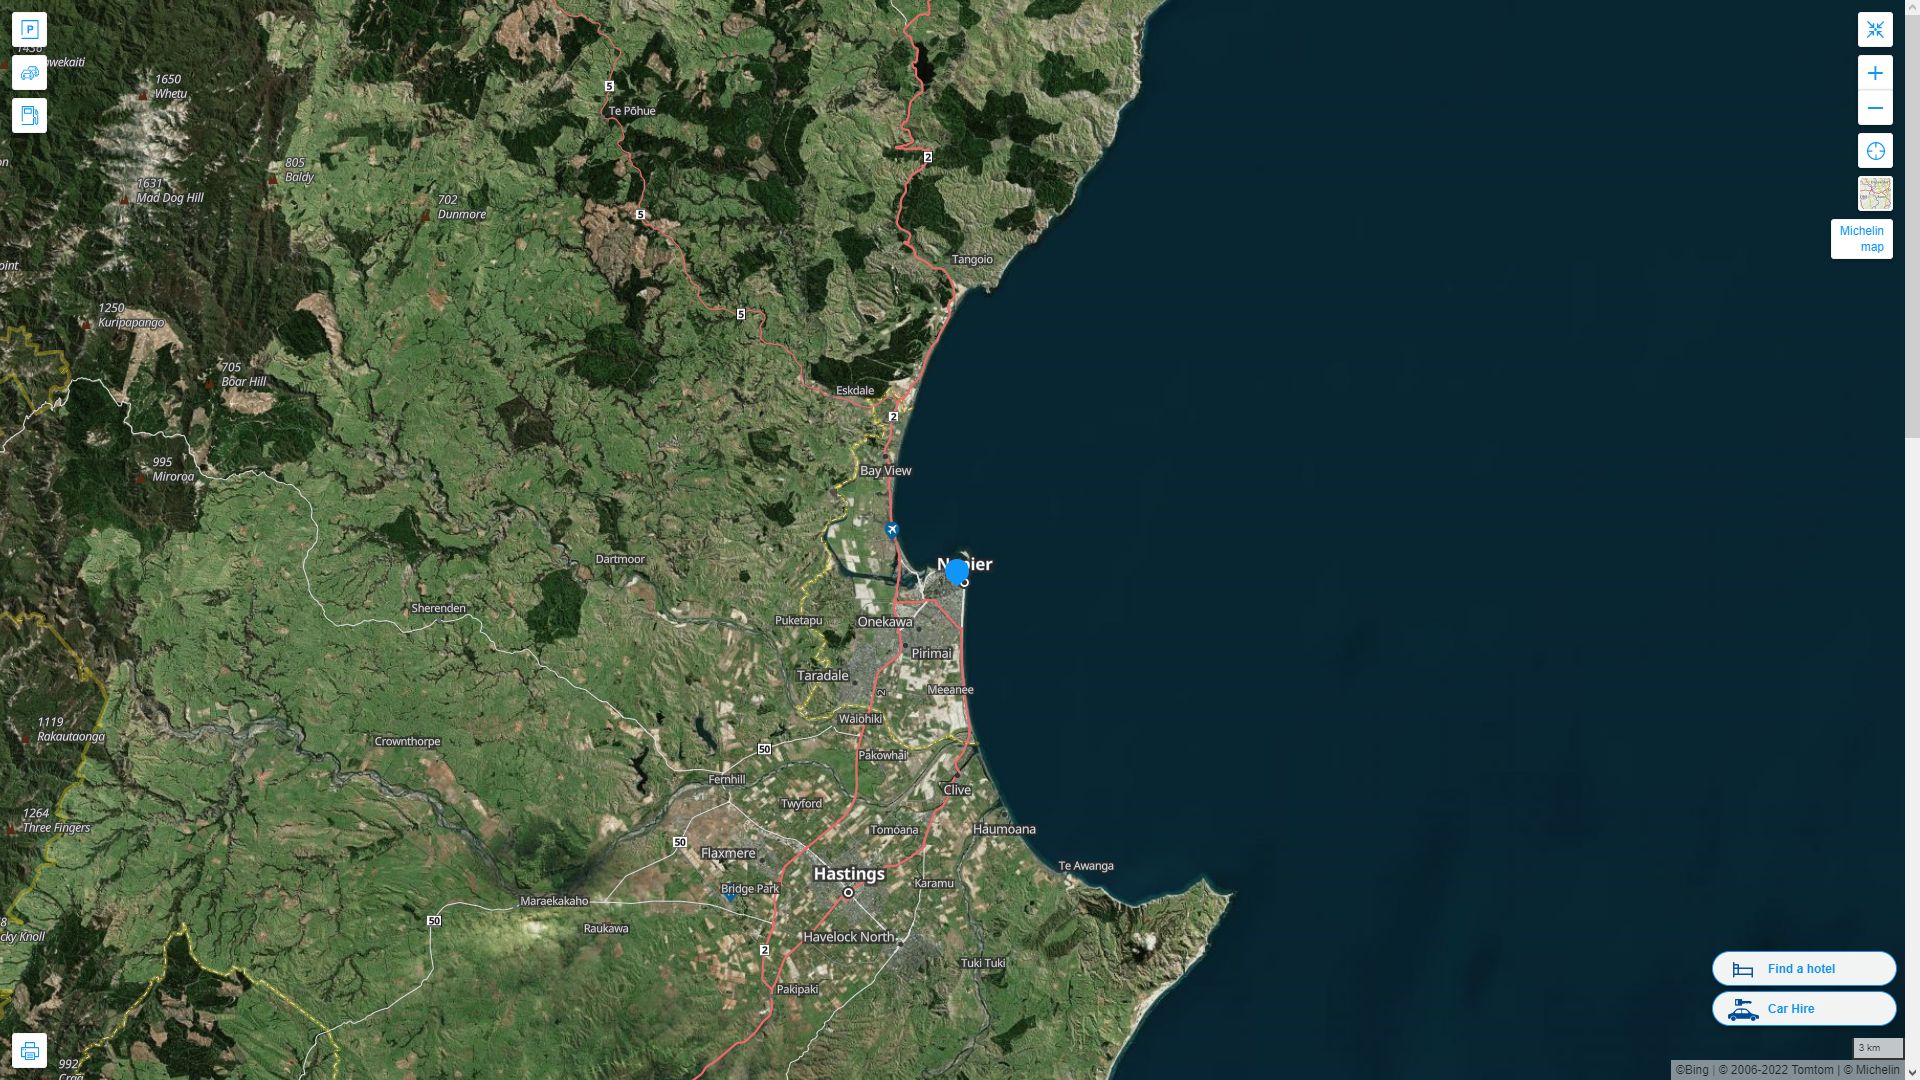 Napier Nouvelle Zelande Autoroute et carte routiere avec vue satellite